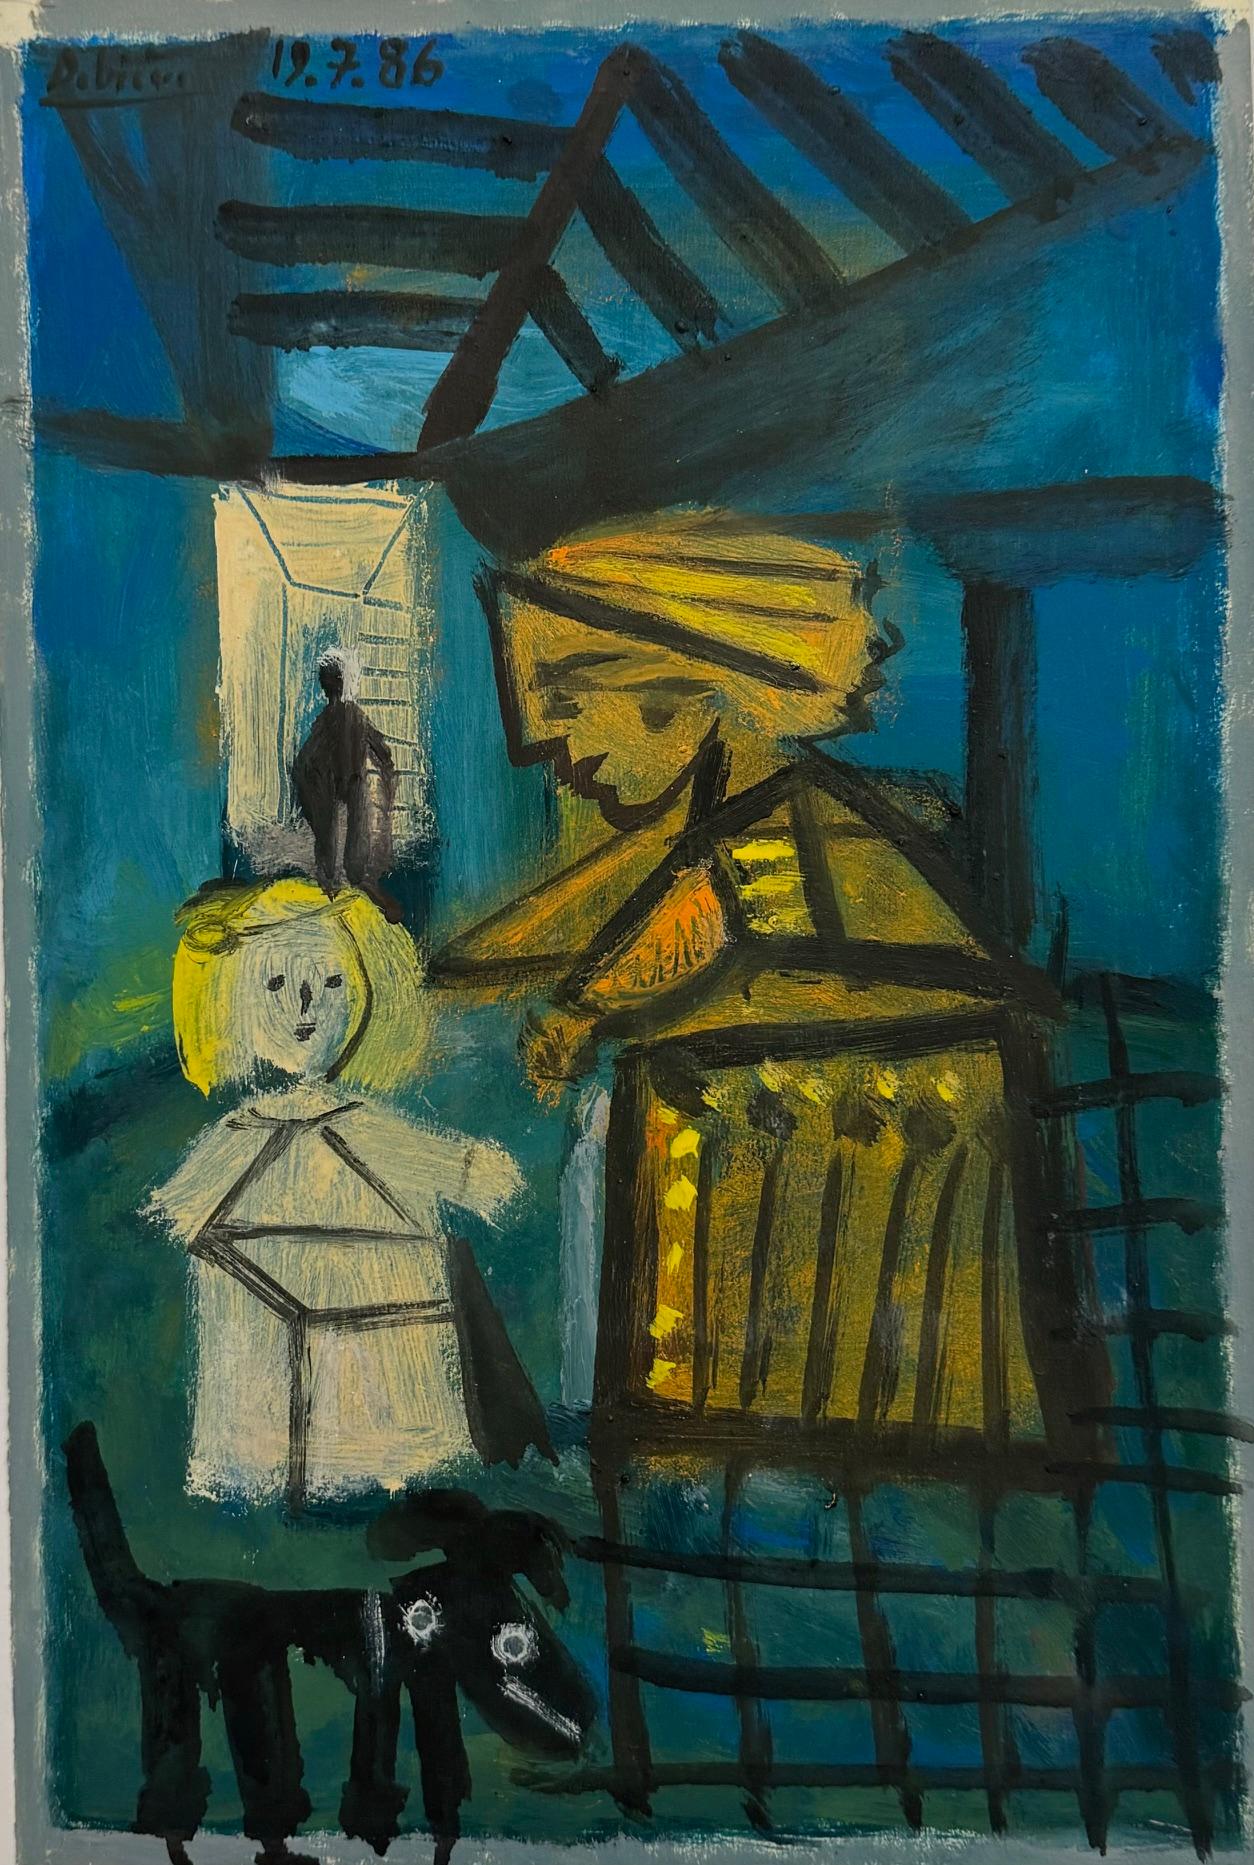 A Goodnight Hug von Raymond Debieve, französisches kubistisches figuratives Gemälde auf Karton, Goodnight Hug